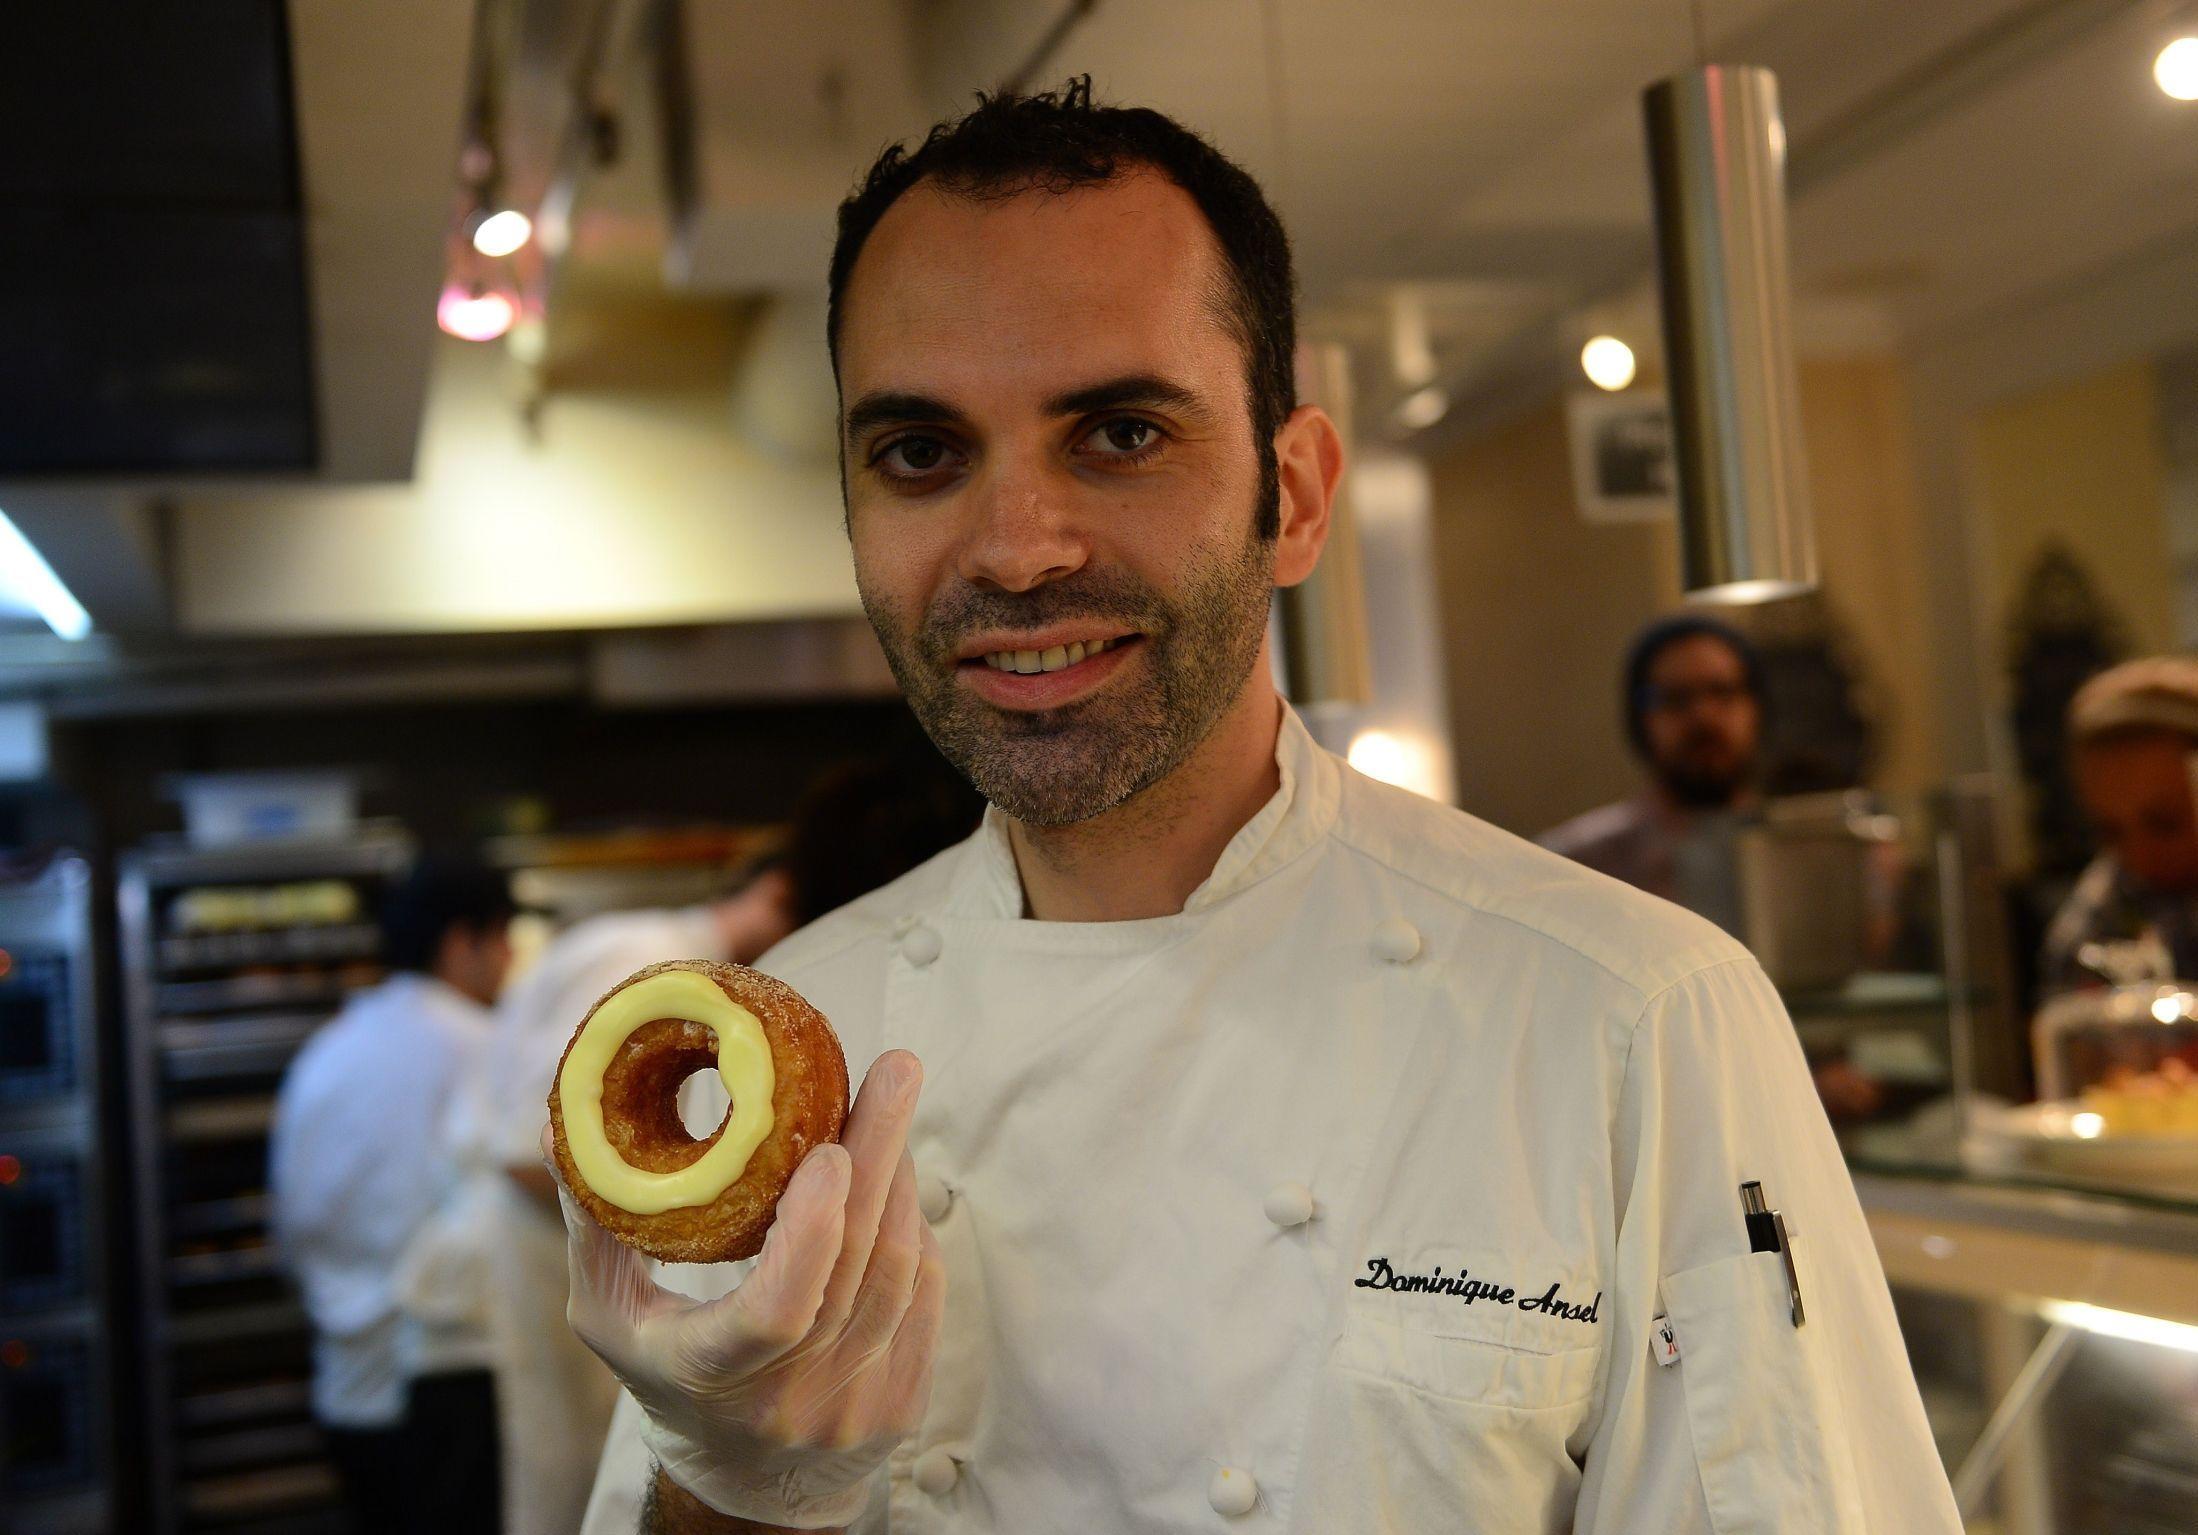 BAKEKONGEN: Dominique Ansel har blitt verdensberømt for The Cronut som han lanserte i mai 2013. Nå har han utviklet en ny hybrid-dessert, som sprer seg over amerikanske medier. Foto: AFP/Emmanuel Dunand